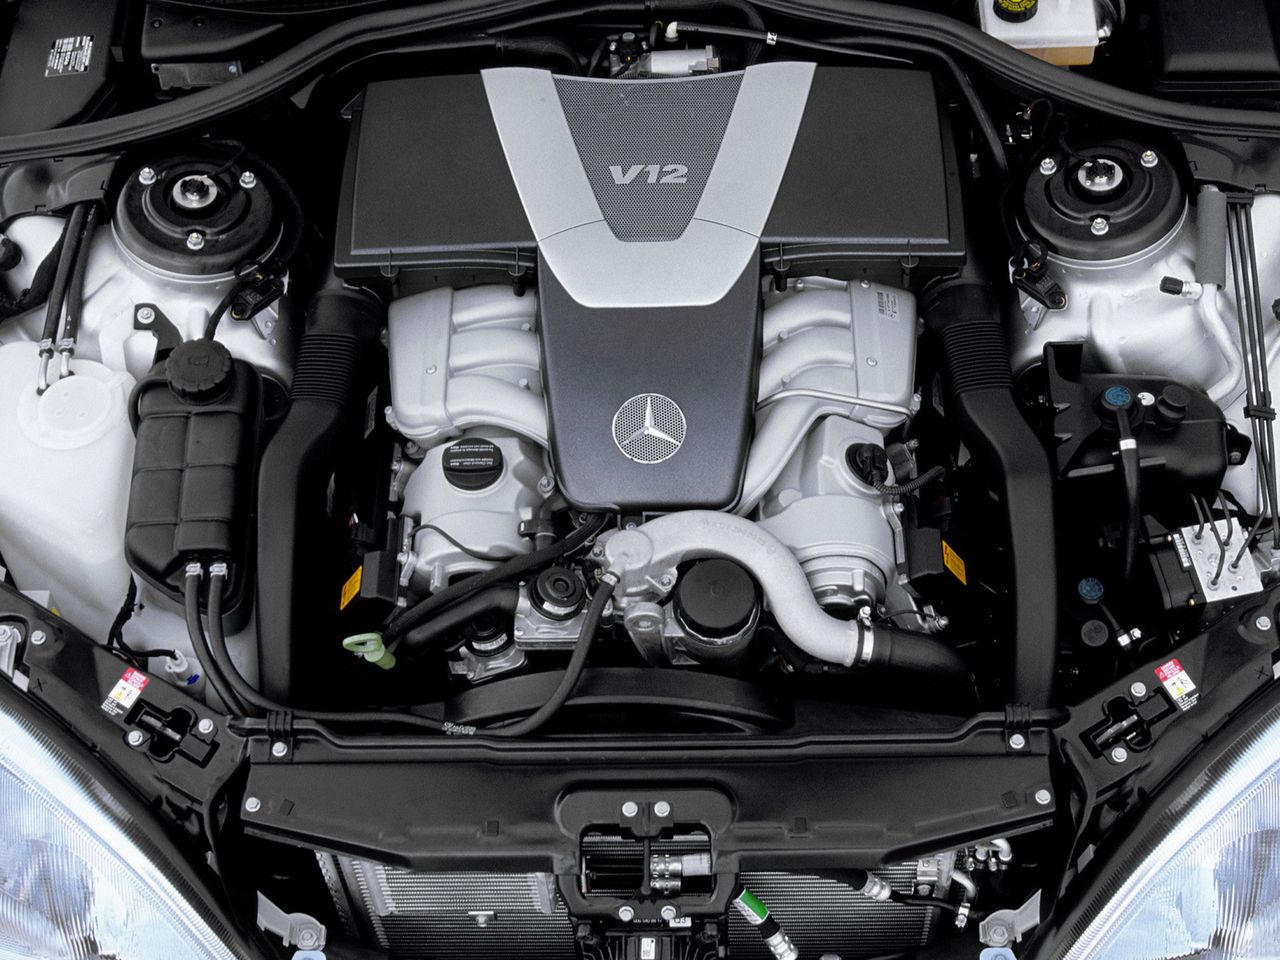 Nawet silniki V12 Mercedesa należy traktować jako coś dla kolekcjonera. Tu wydatki idą w tysiące.